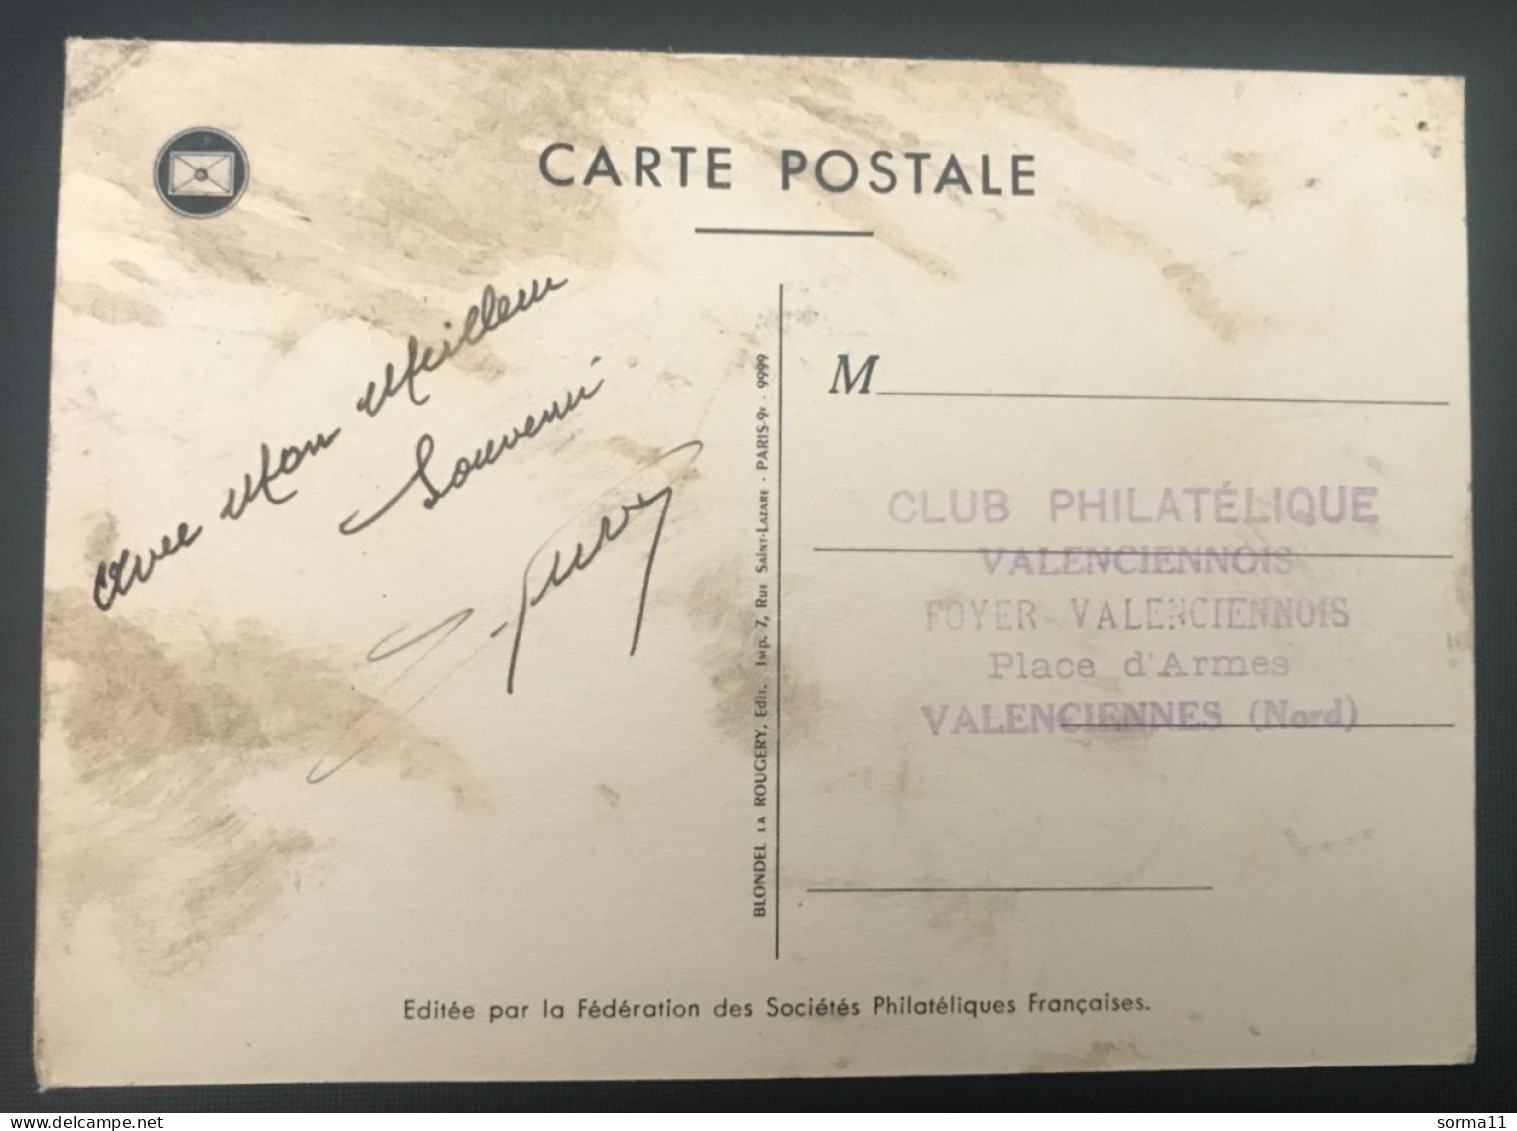 Journée Nationale Du Timbre 1955 La Poste Par Ballon (Club Philatélique Valenciennes 59) - Post & Briefboten